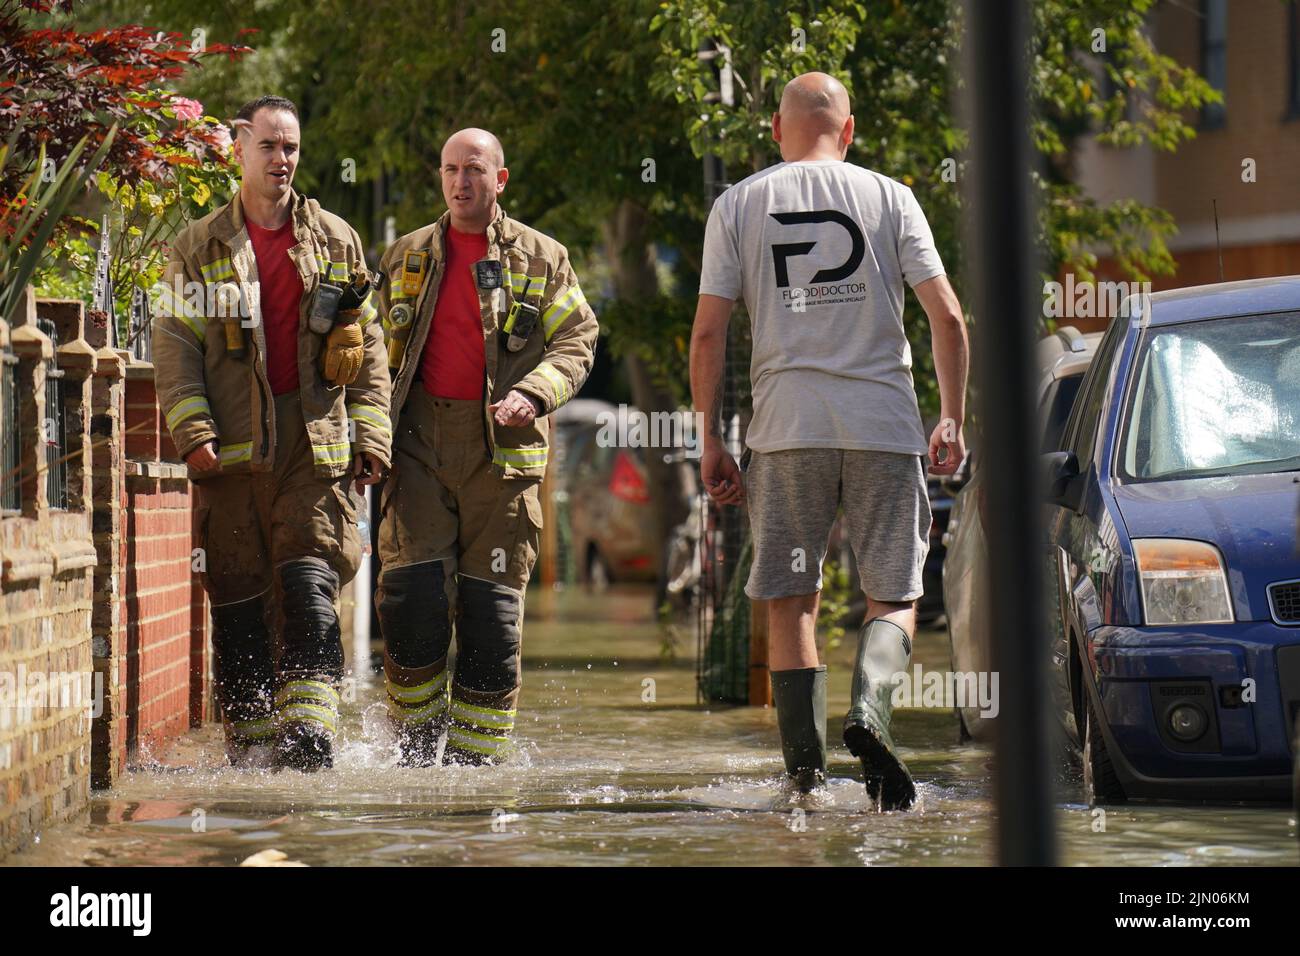 Los miembros de la Brigada de Bomberos de Londres pasan a un miembro del público mientras caminan en el agua de la inundación en Annette Road cerca de Tollington Road, Holloway, al norte de Londres, después de una explosión principal de agua de 36 pulgadas, causando inundaciones de hasta cuatro pies de profundidad. Fecha de la foto: Lunes 8 de agosto de 2022. Foto de stock